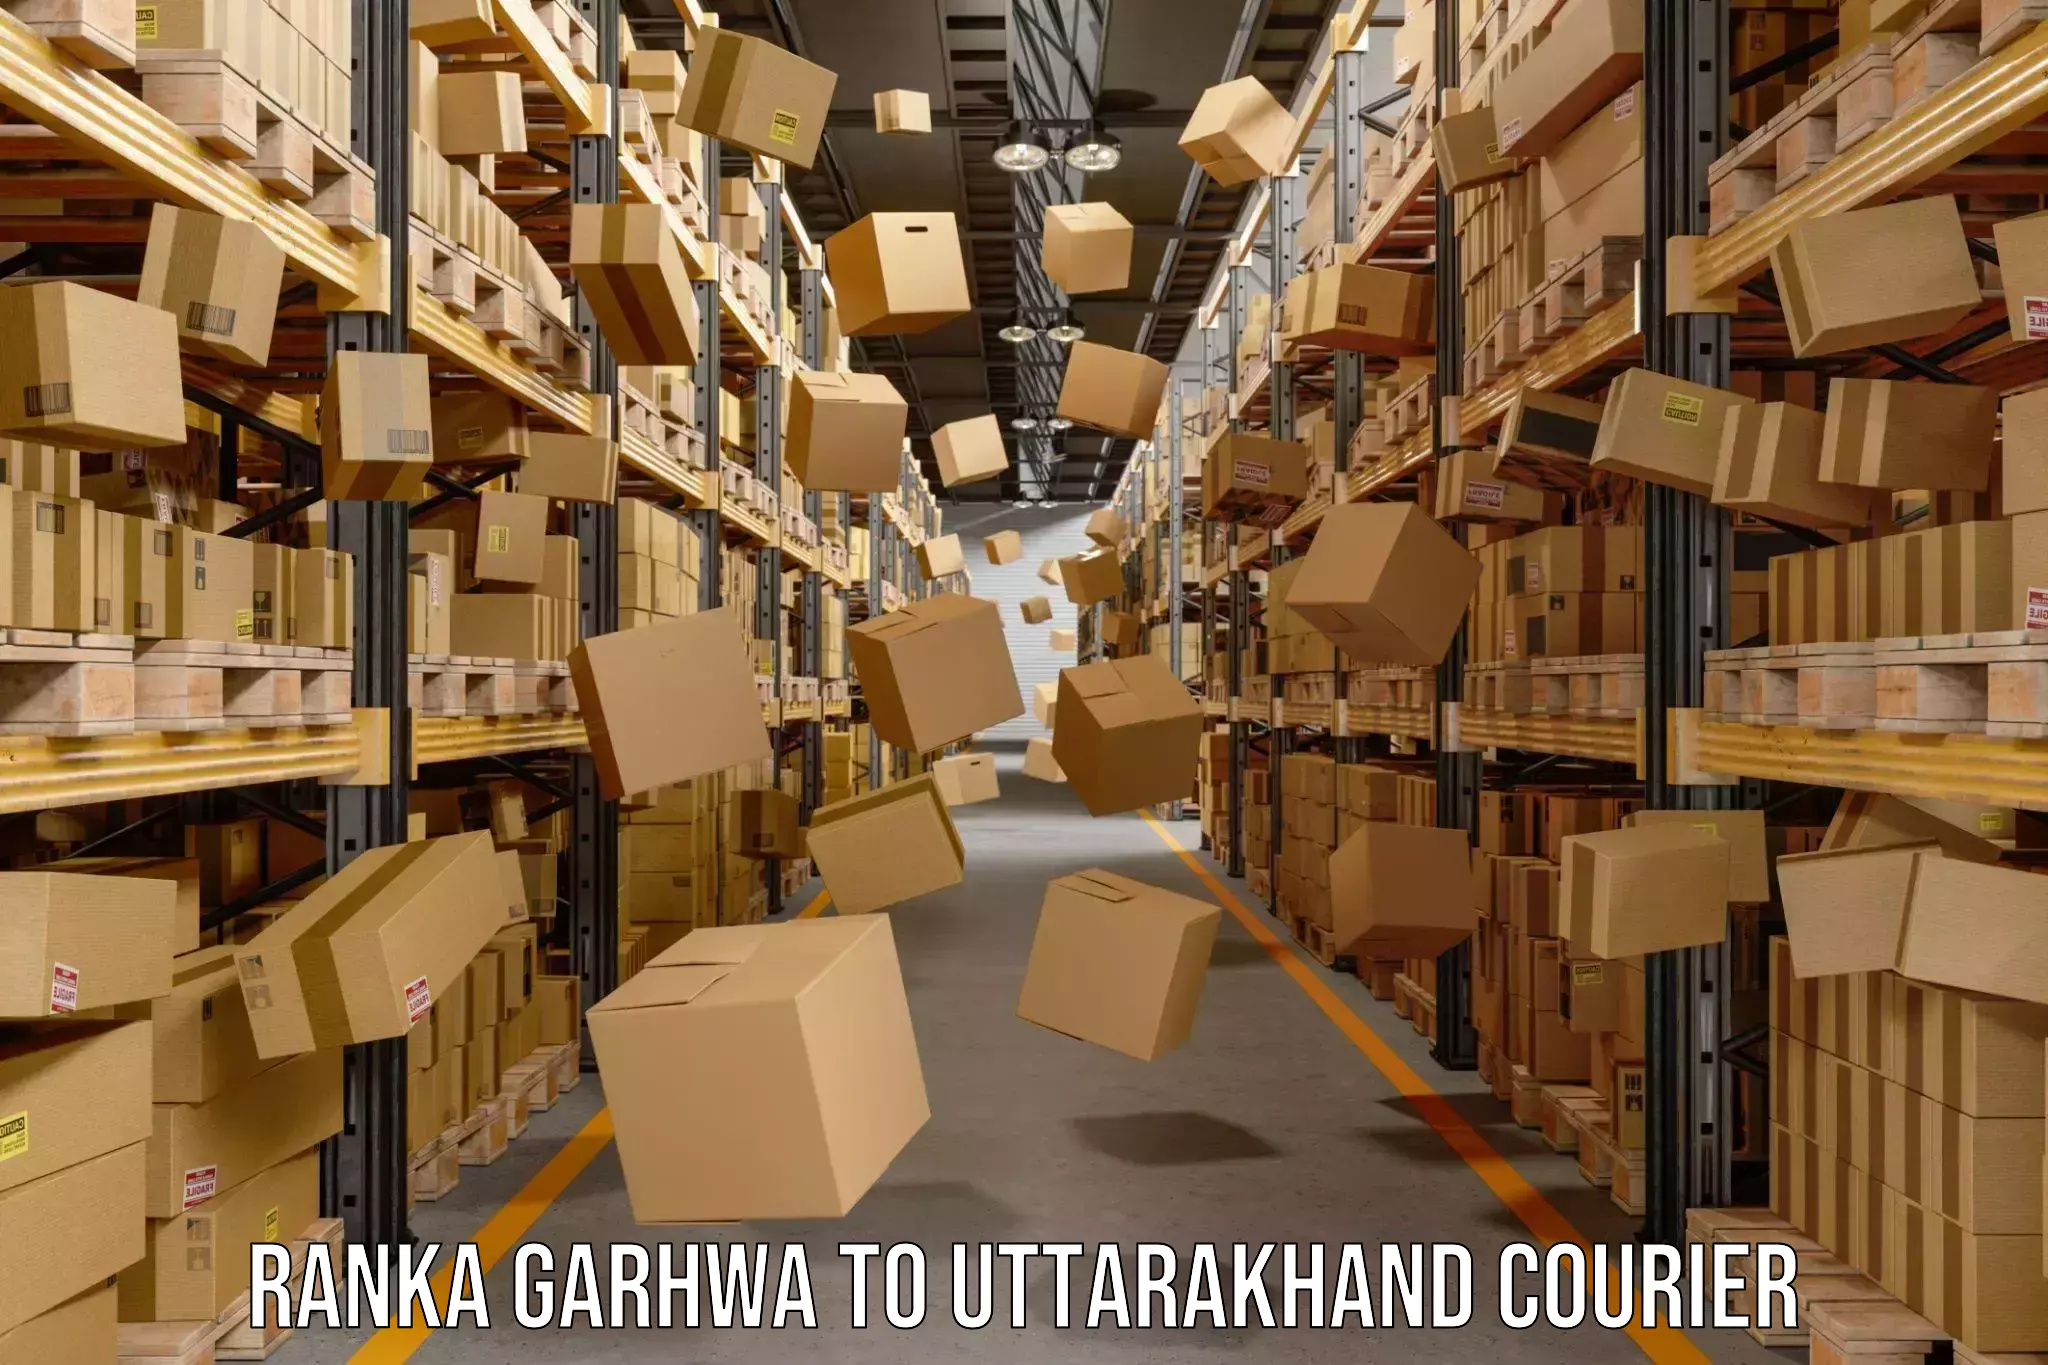 Professional courier handling Ranka Garhwa to Uttarakhand